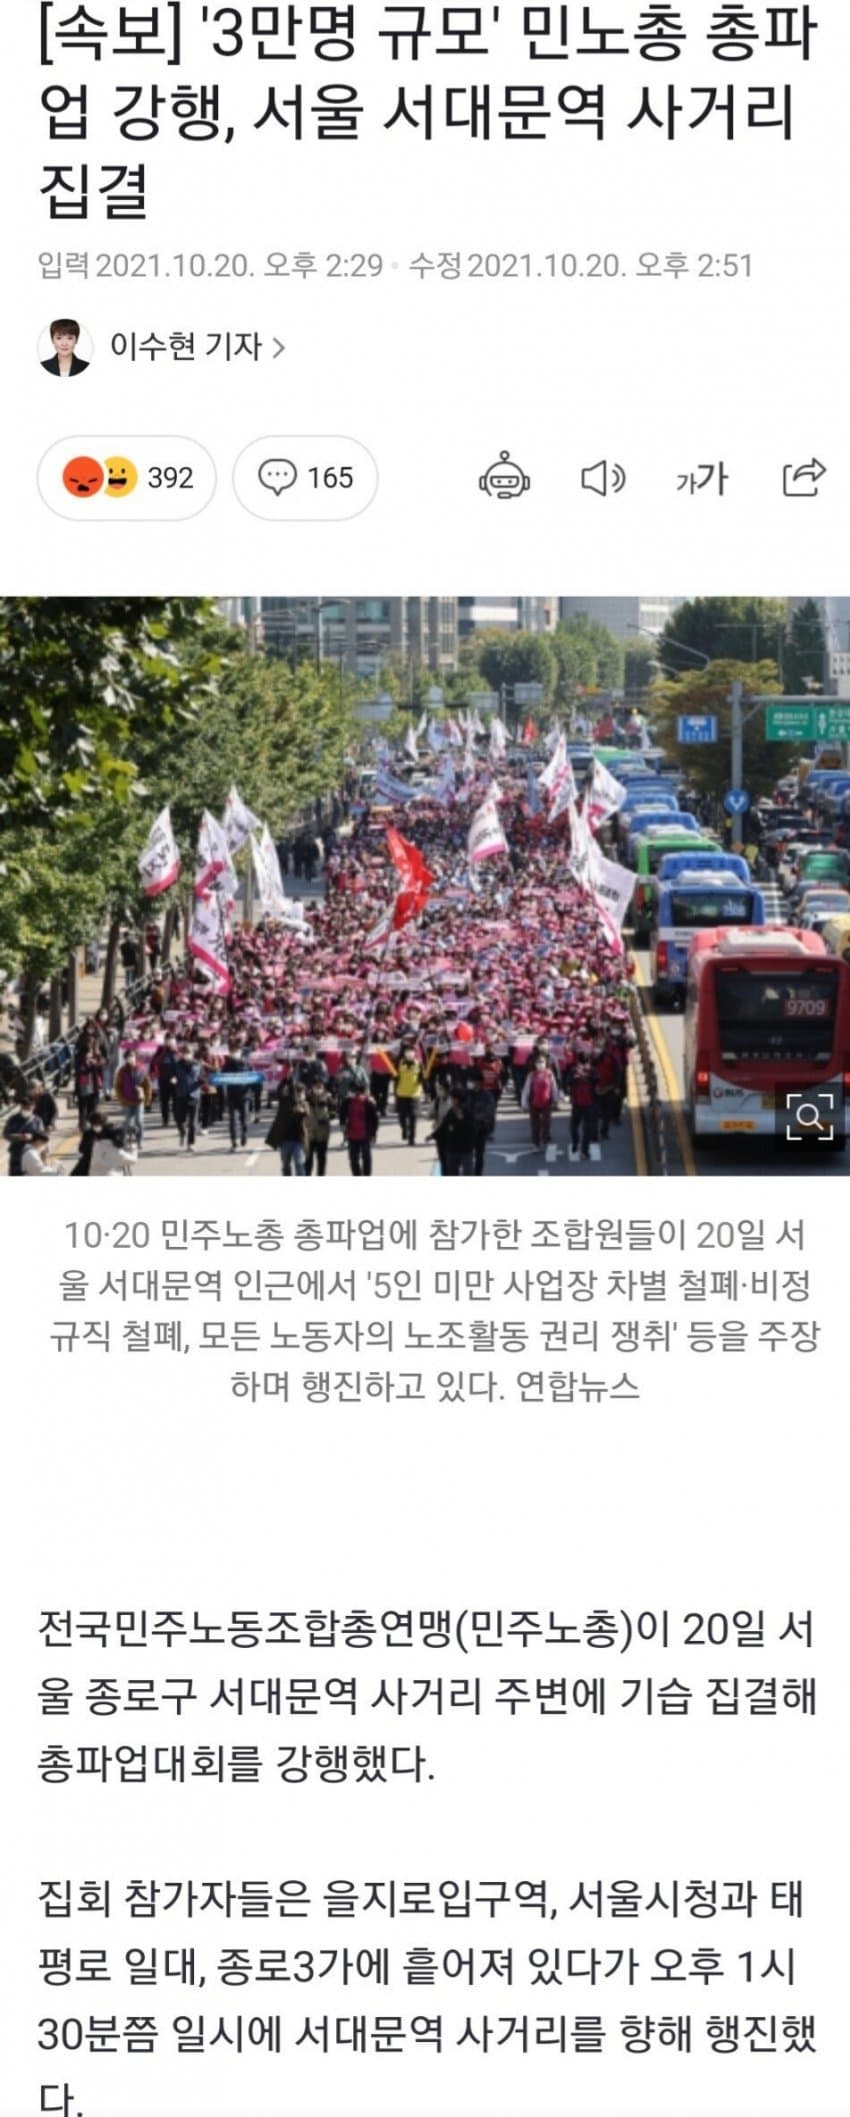 한국은 이미 위드 코로나 실행 중